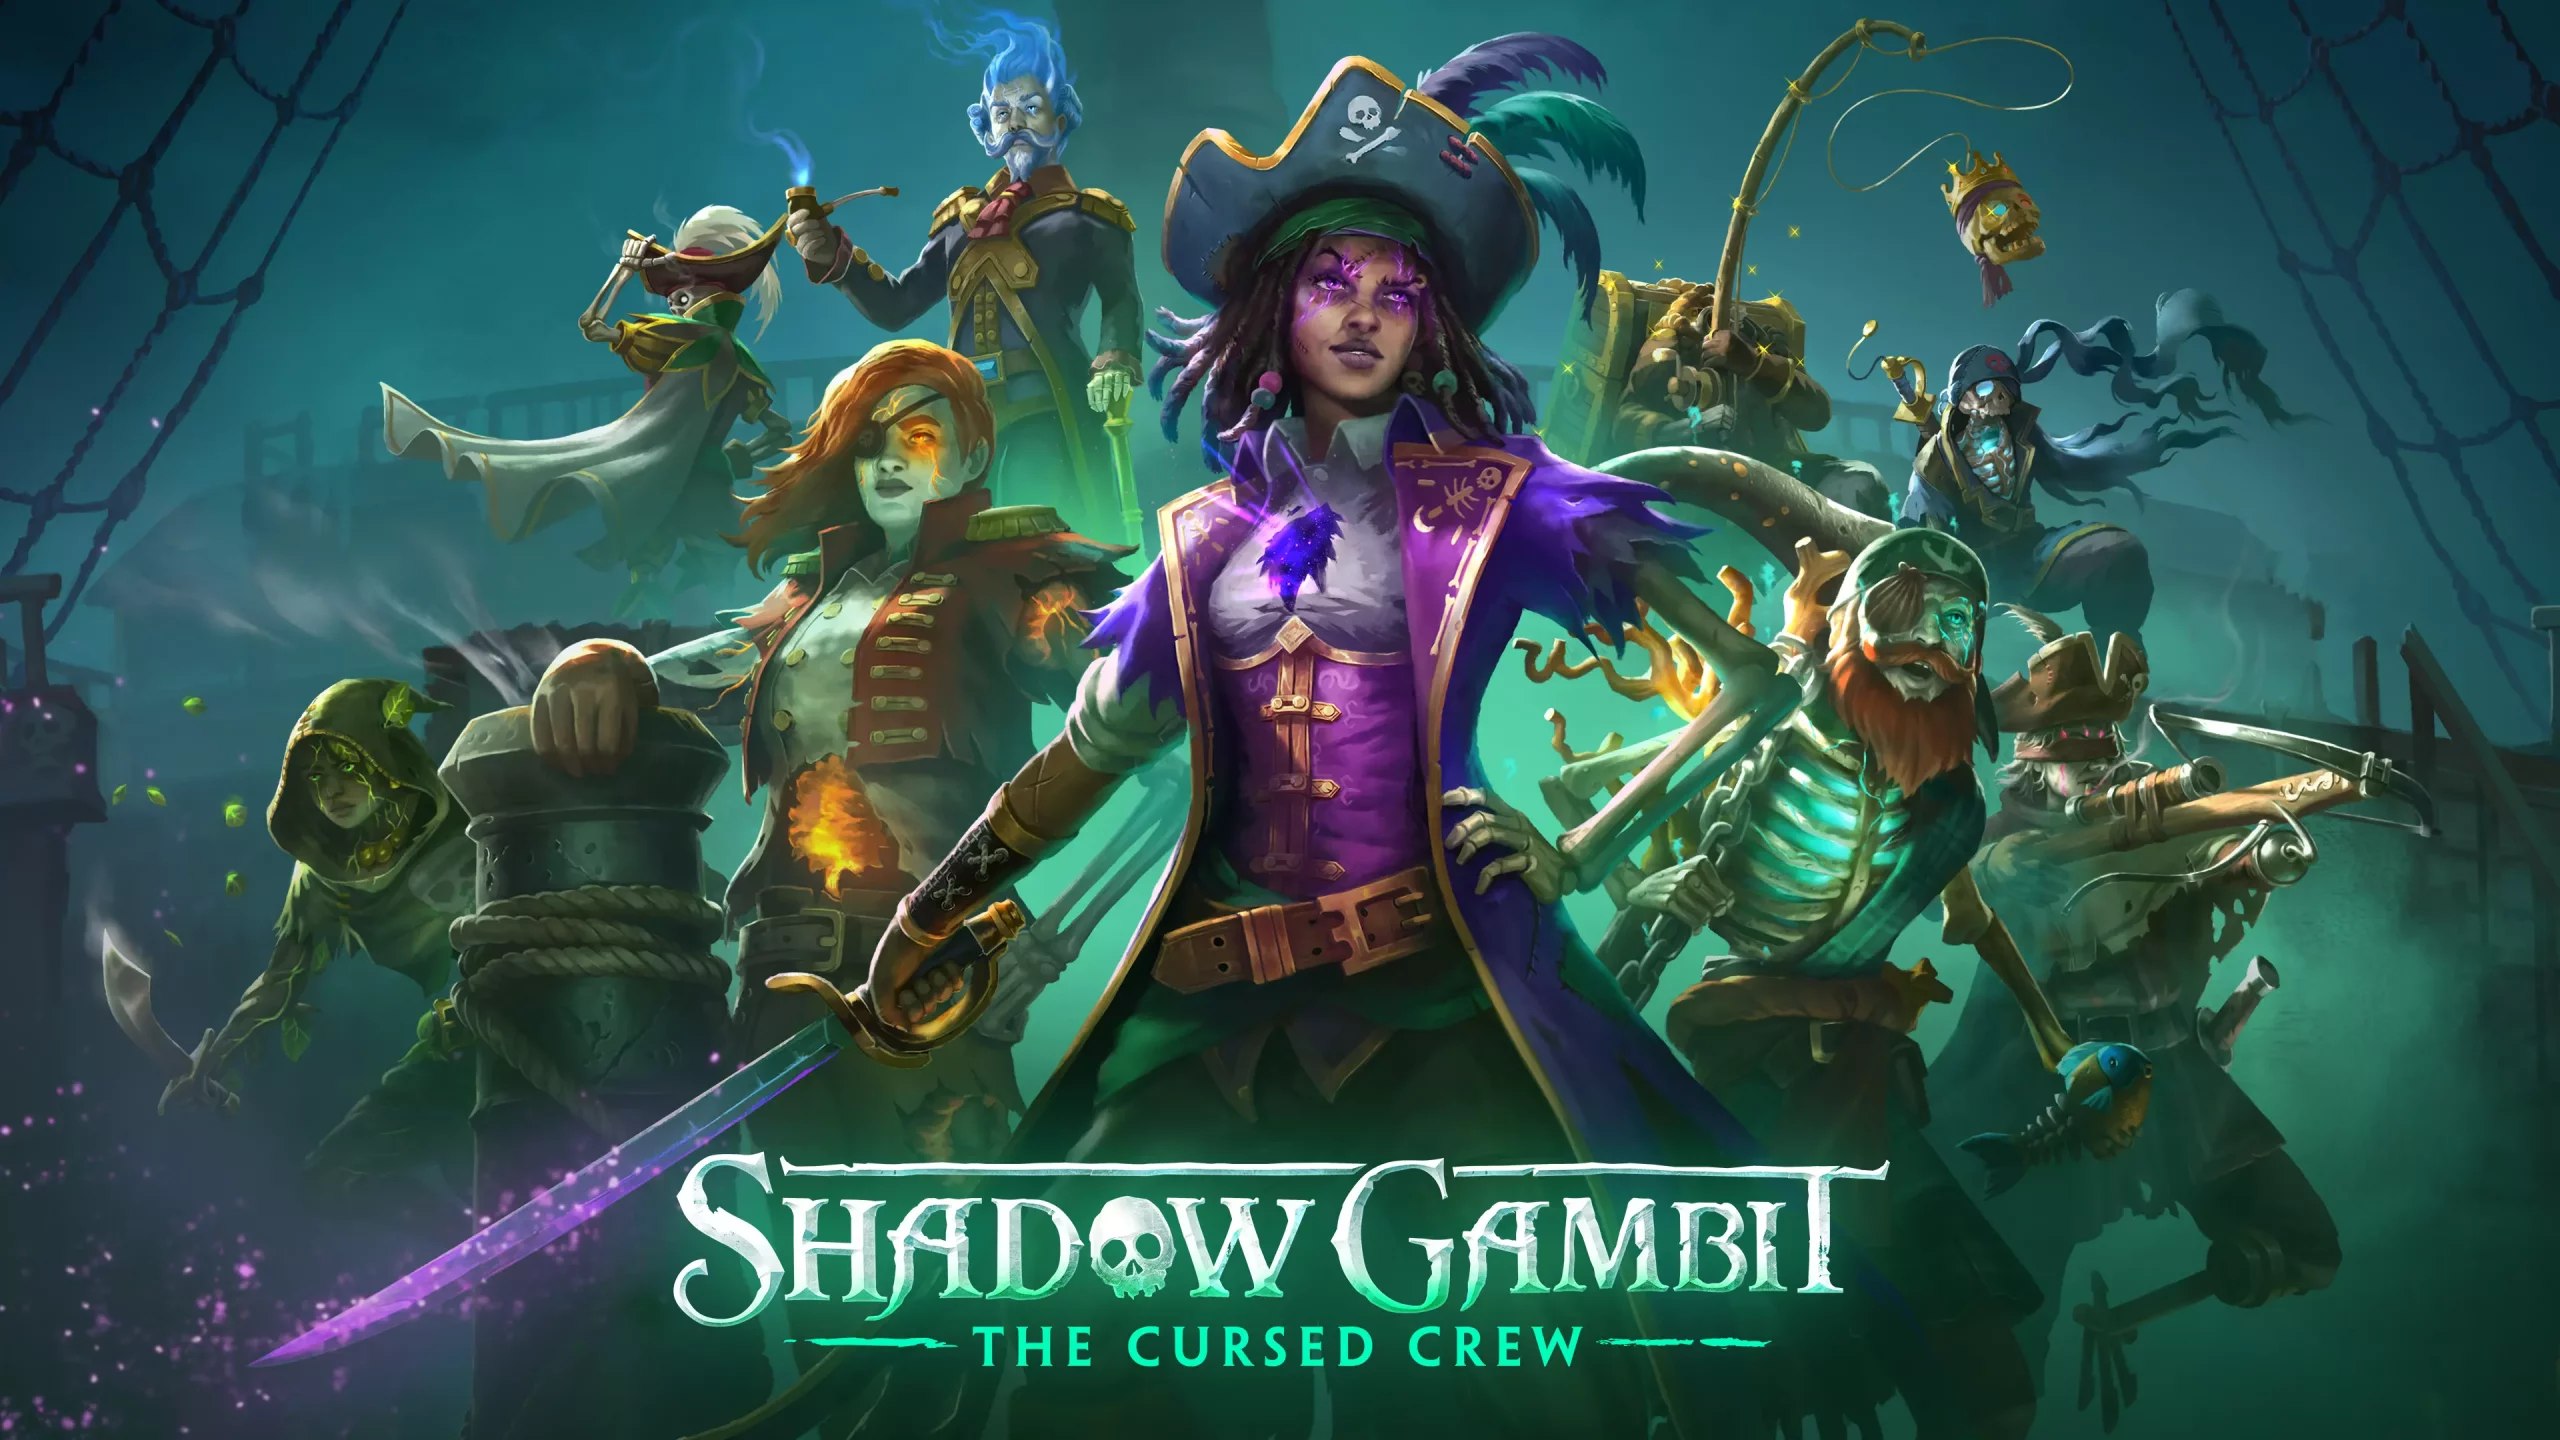 Shadow Gambit: The Cursed Crew hissa la vela a PC i consoles